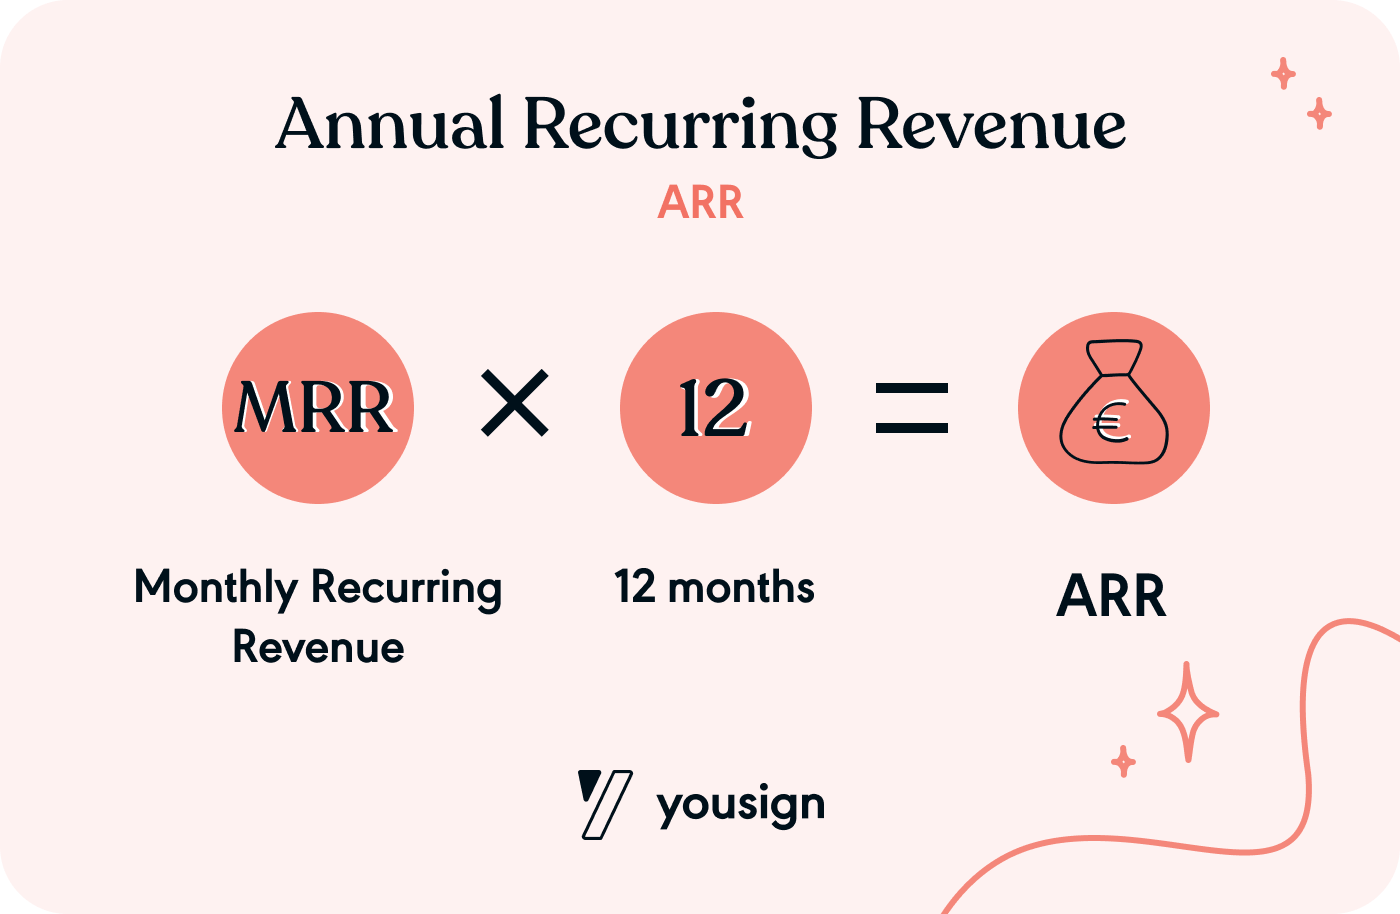 ARR (Annual Recurring Revenue)